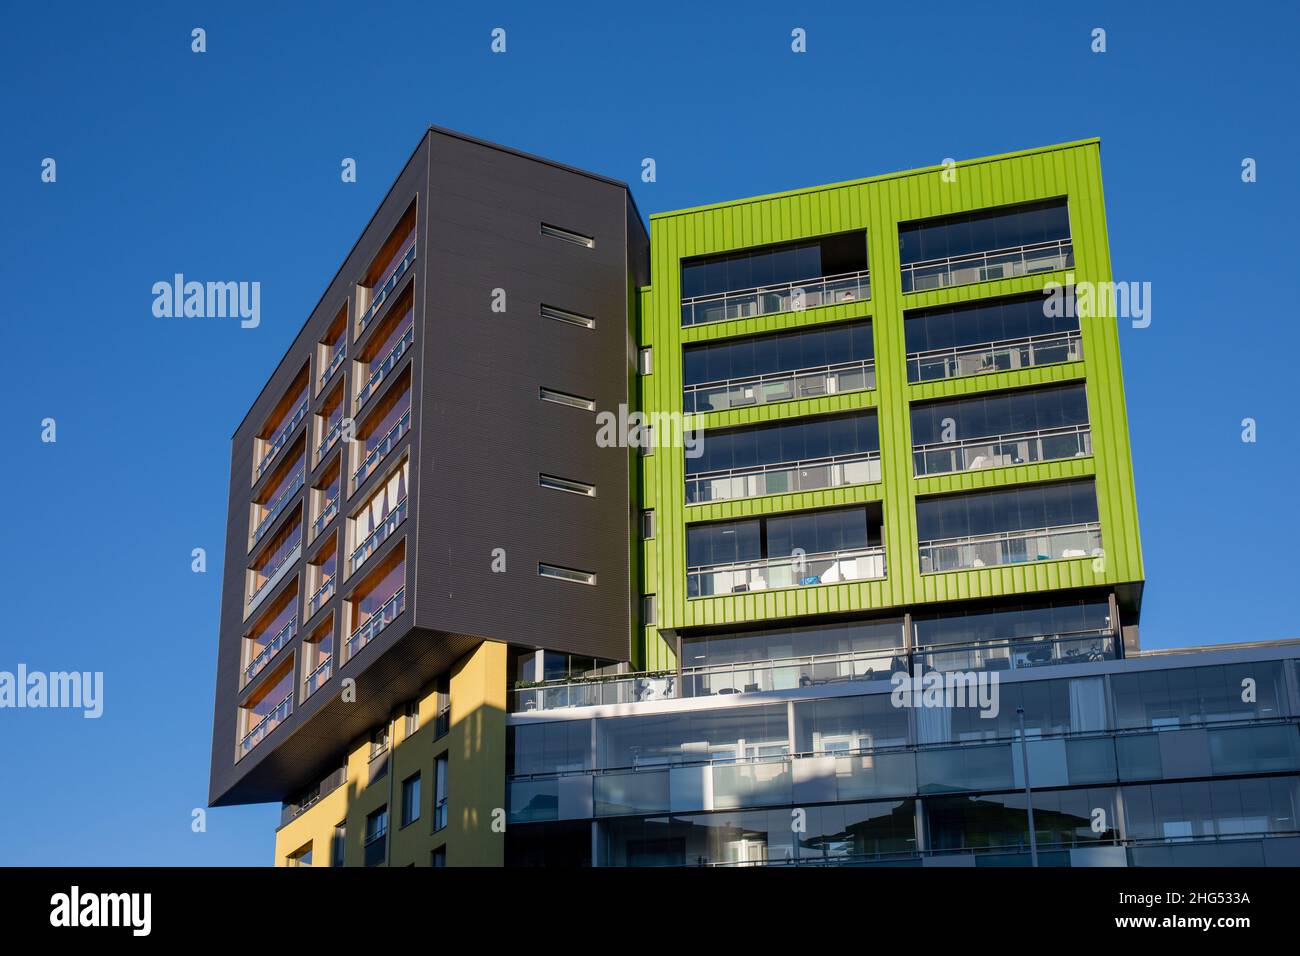 Konepaja Bezirk zeitgenössische Architektur vor klarem blauen Himmel in Helsinki, Finnland Stockfoto